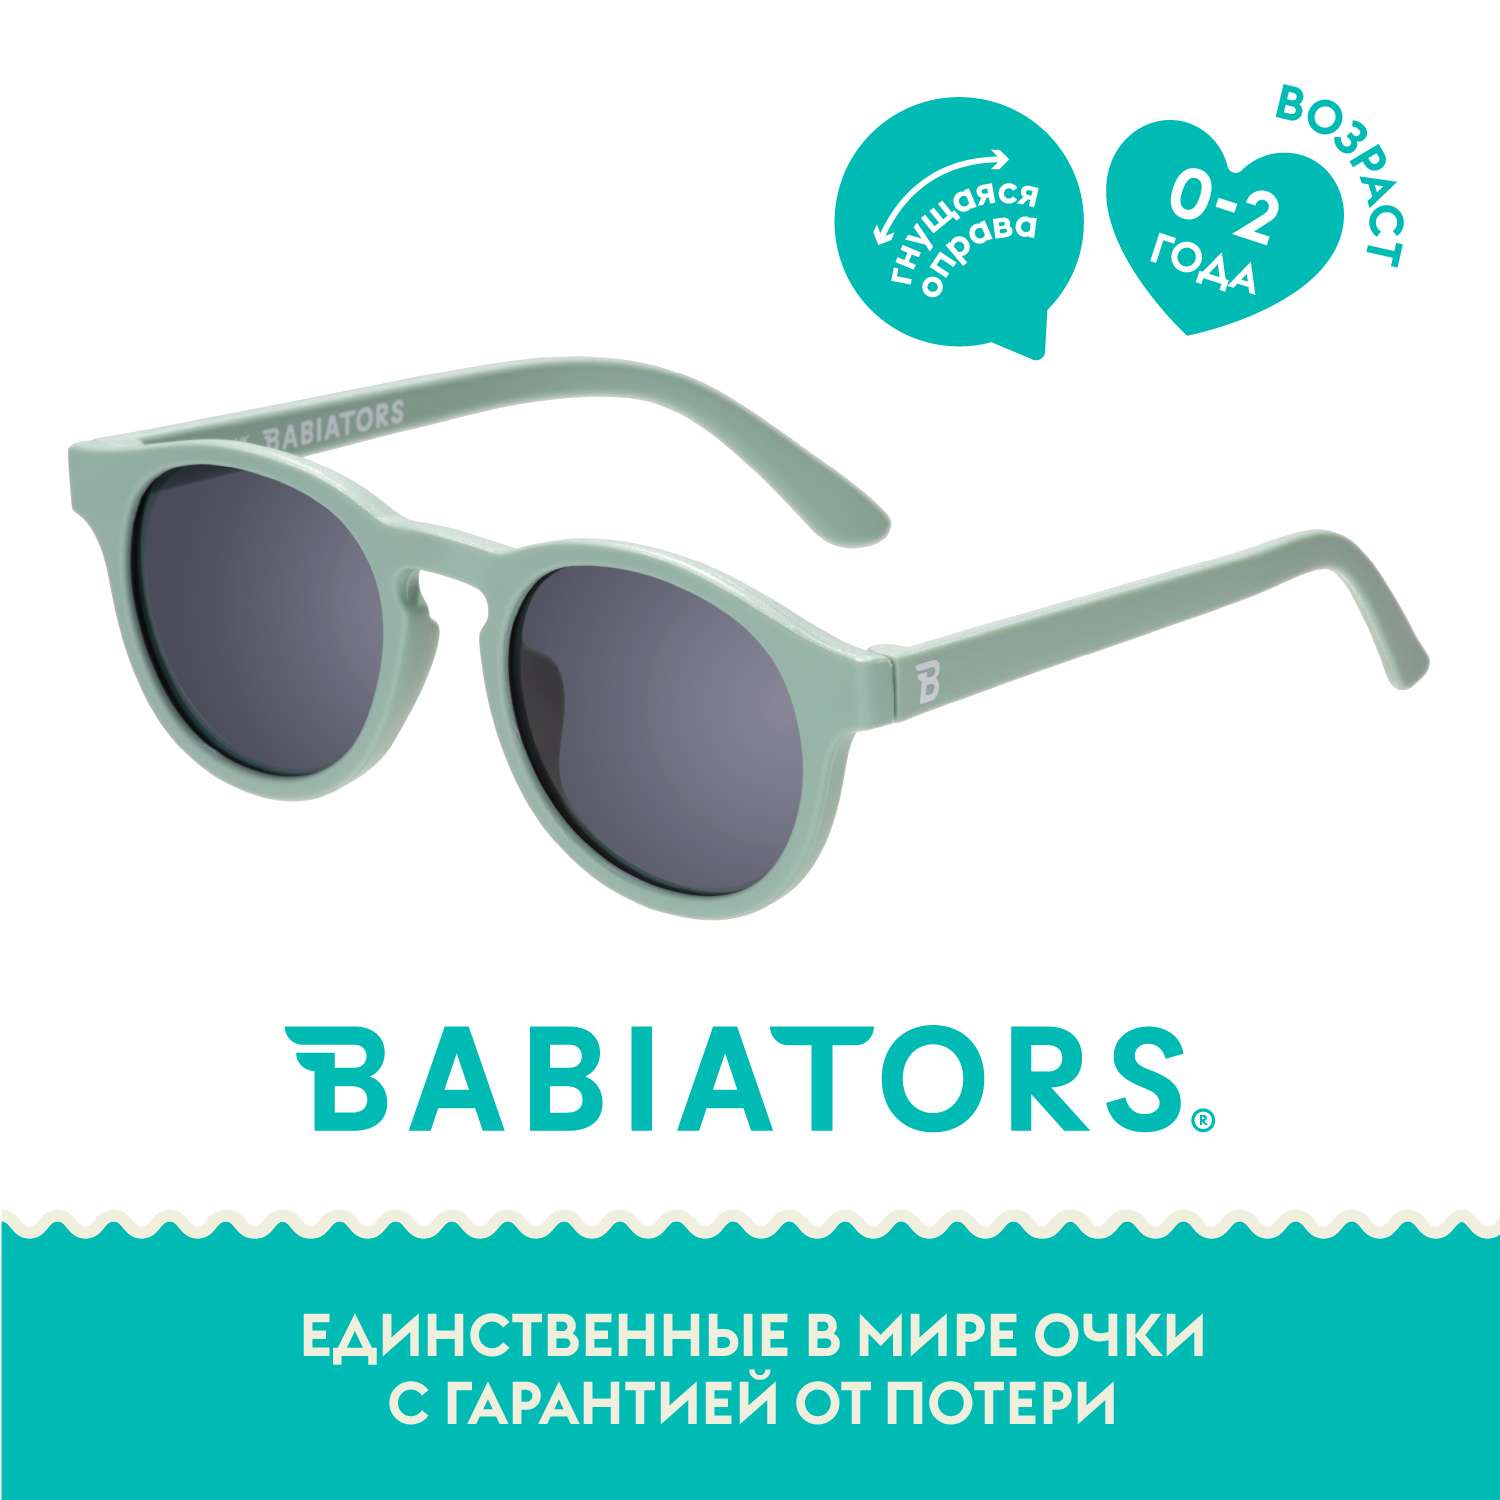 Солнцезащитные очки Babiators Original Keyhole Мята навсегда 0-2 KEY-013 - фото 1